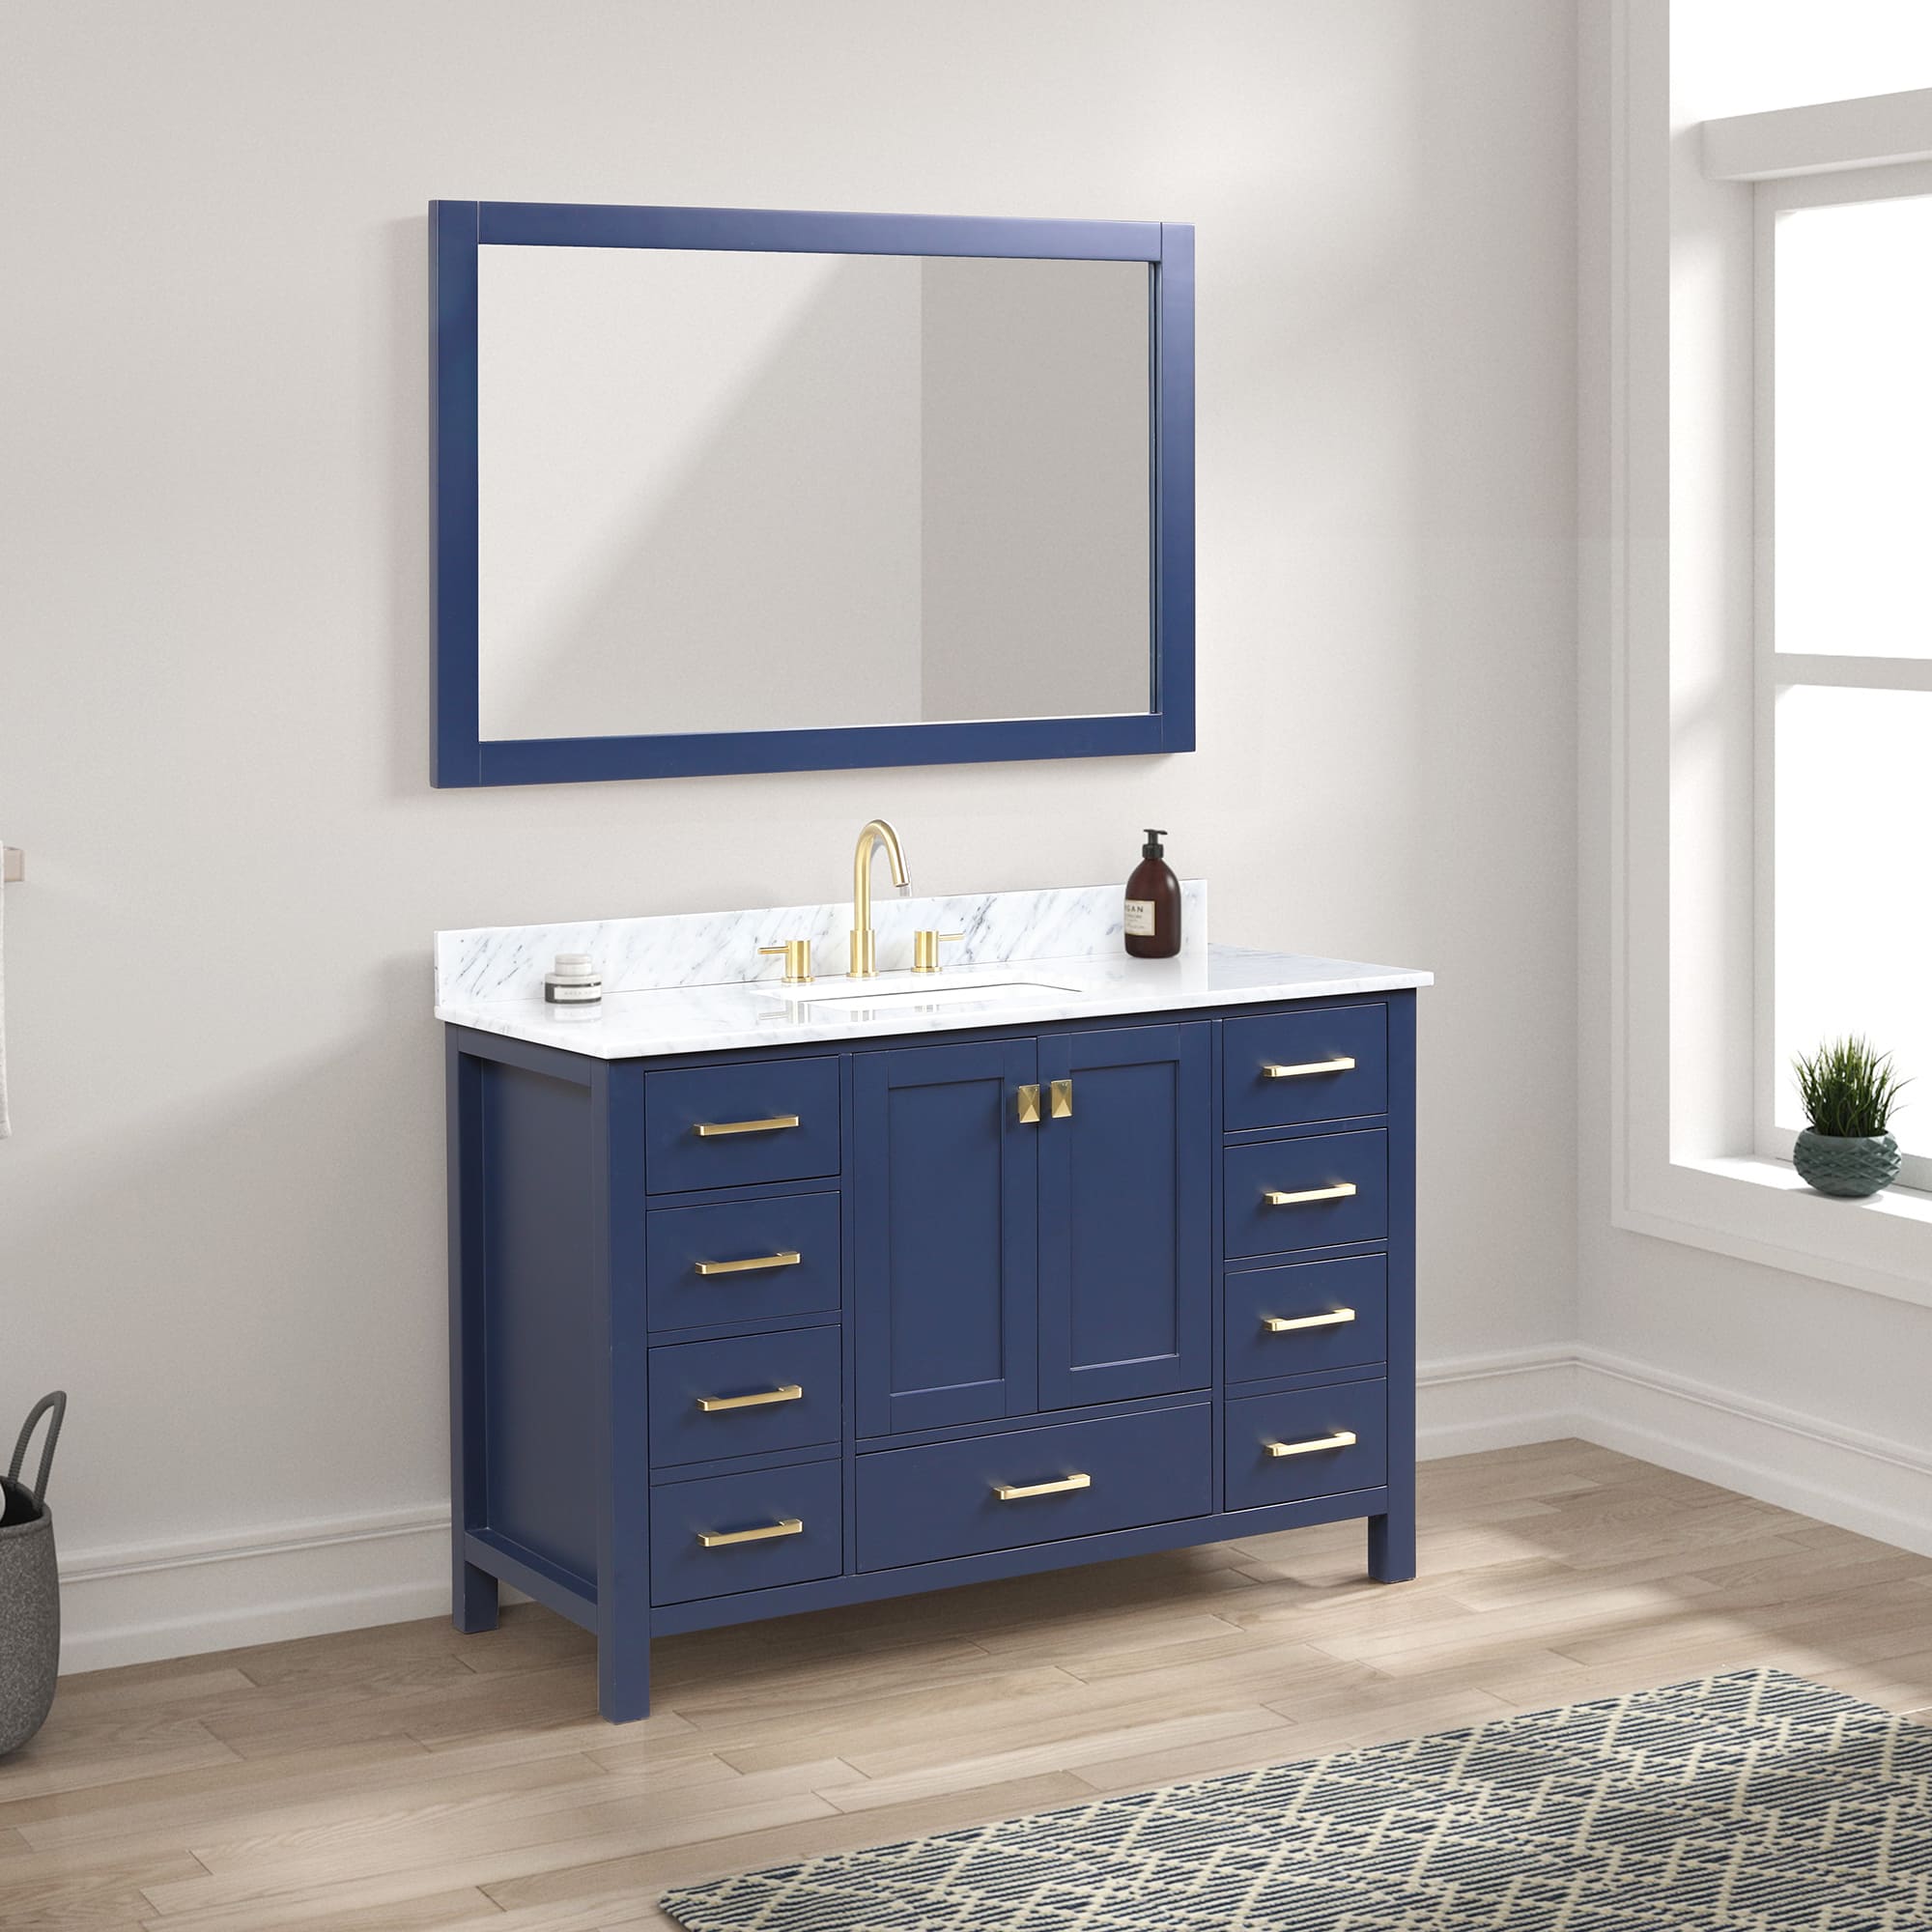 Geneva 48" Bathroom Vanity  #size_48"  #color_navy blue